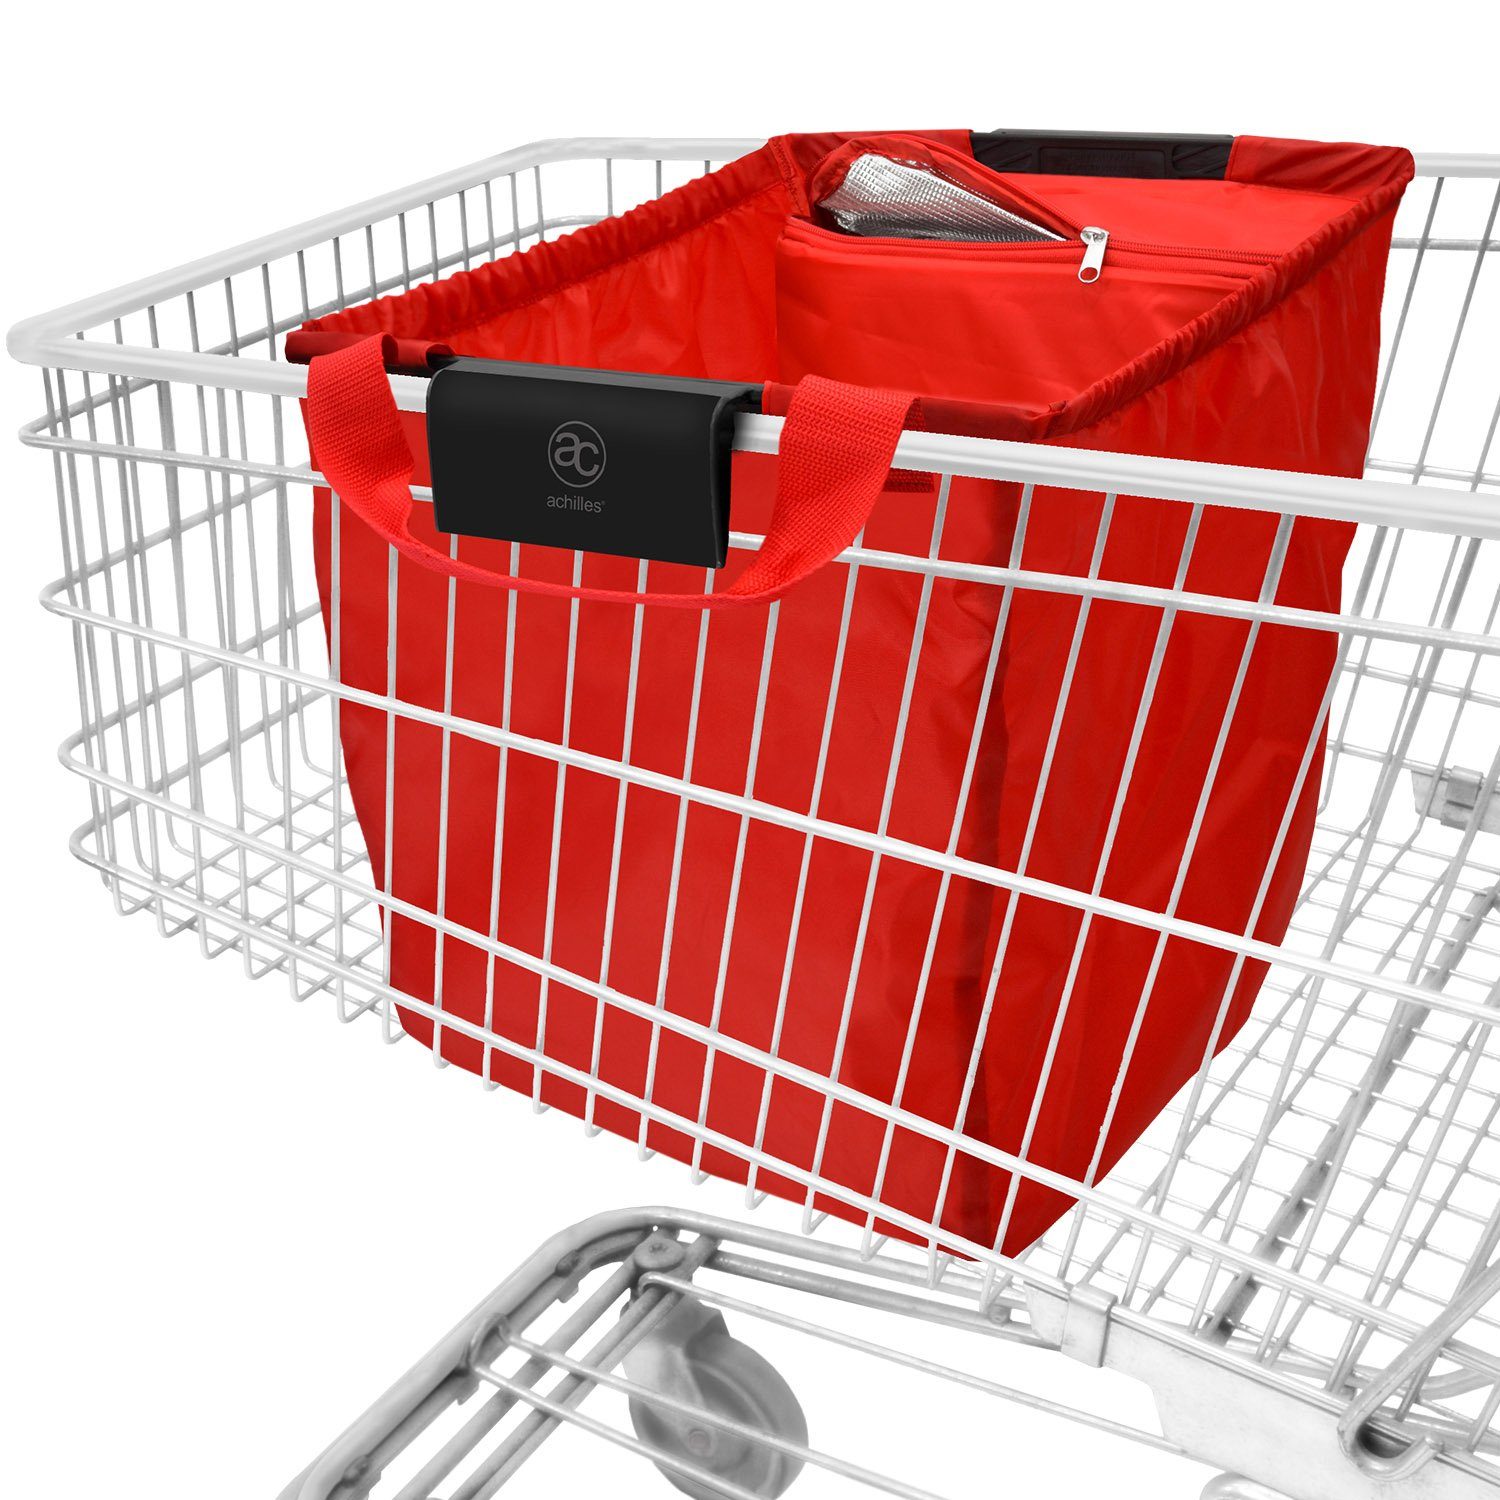 achilles Einkaufsbeutel Easy-Cooler Einkaufswagentasche mit Kühlfunktion, 40 l rot